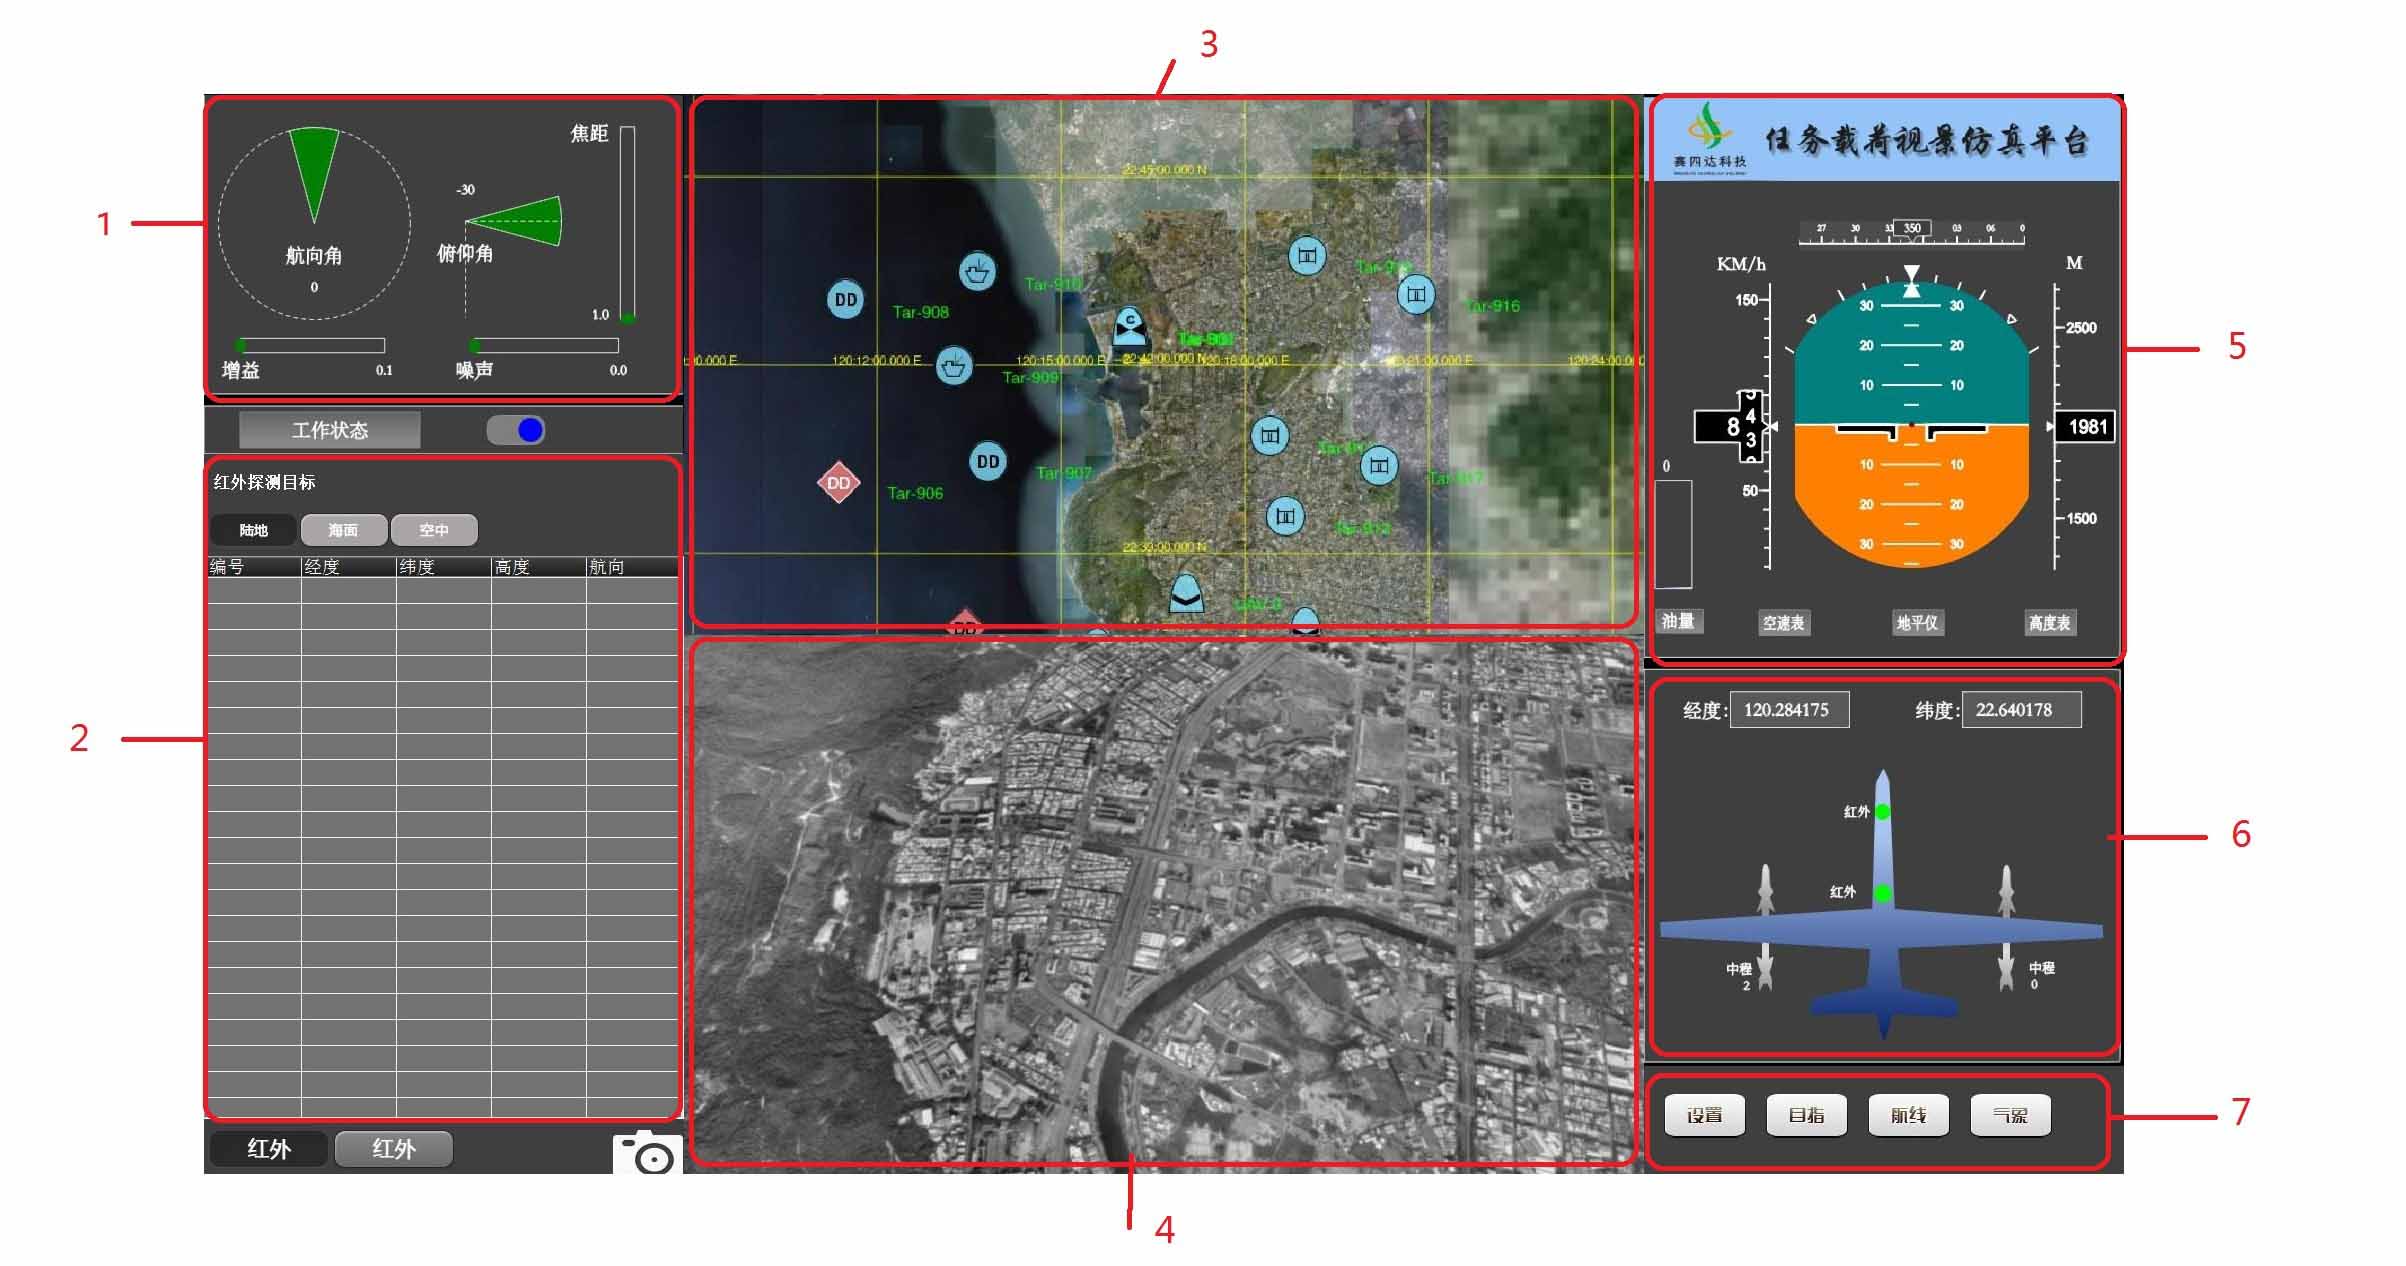 Simulation scheme of UAV ground station